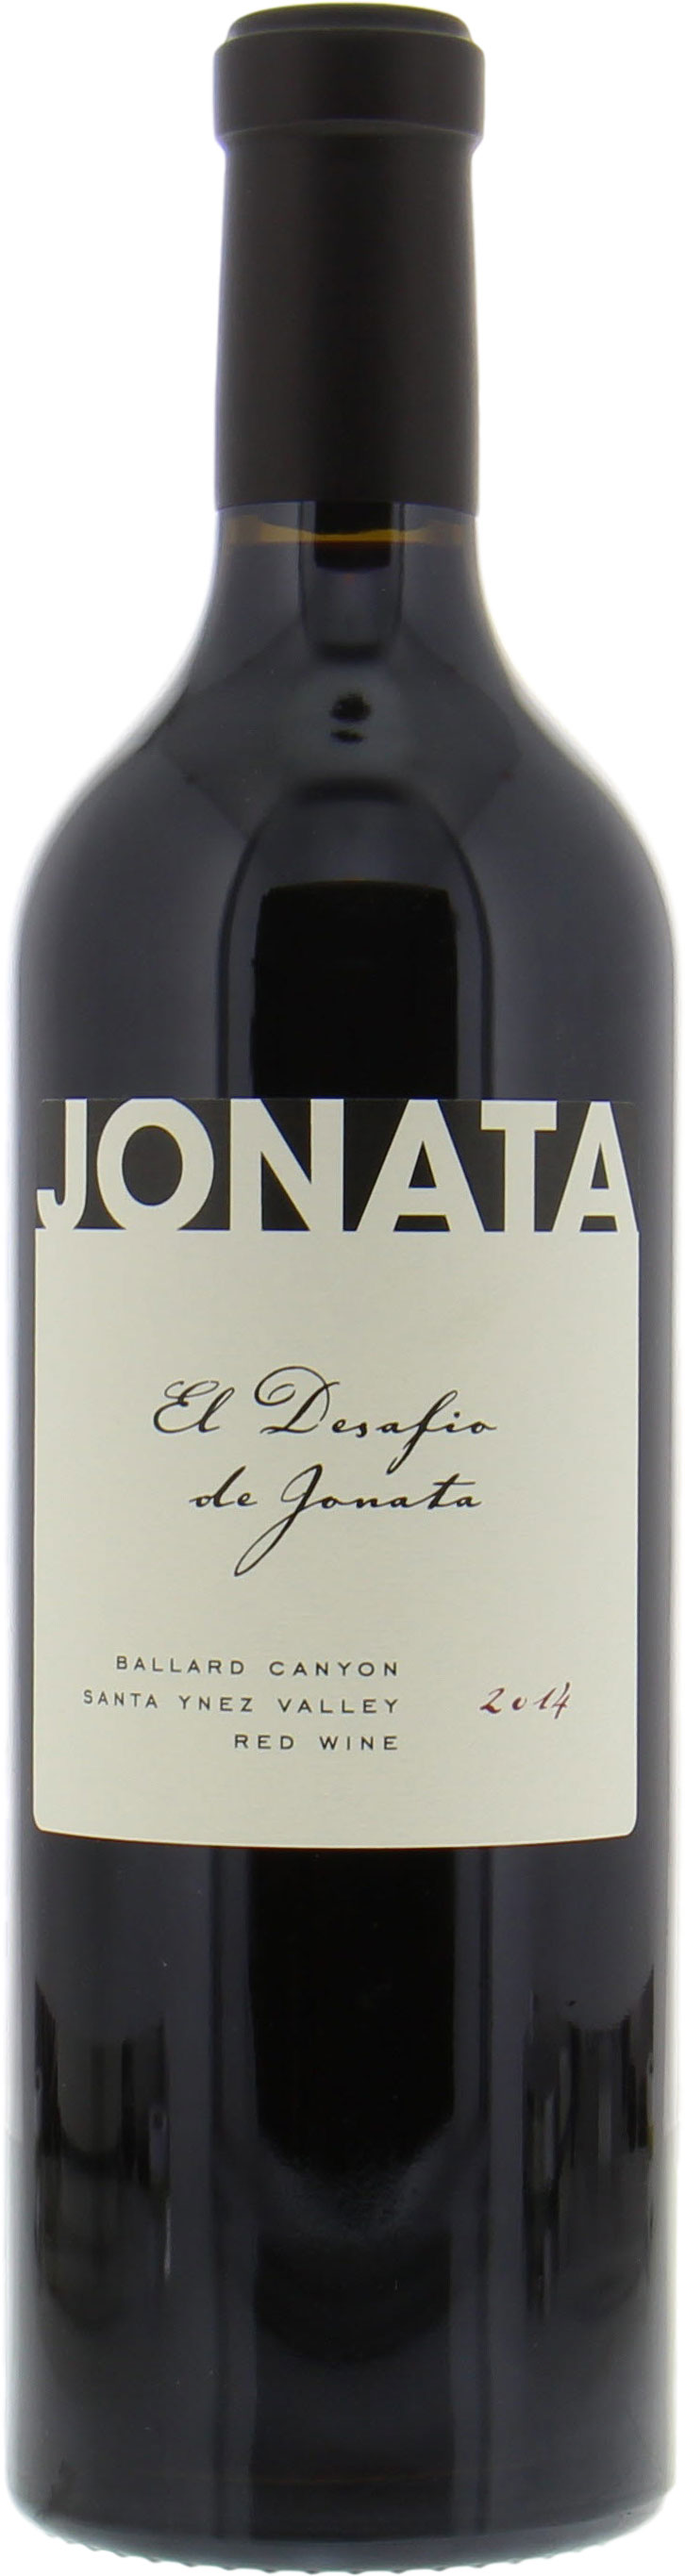 Jonata - El Desafio de Jonata 2014 Perfect